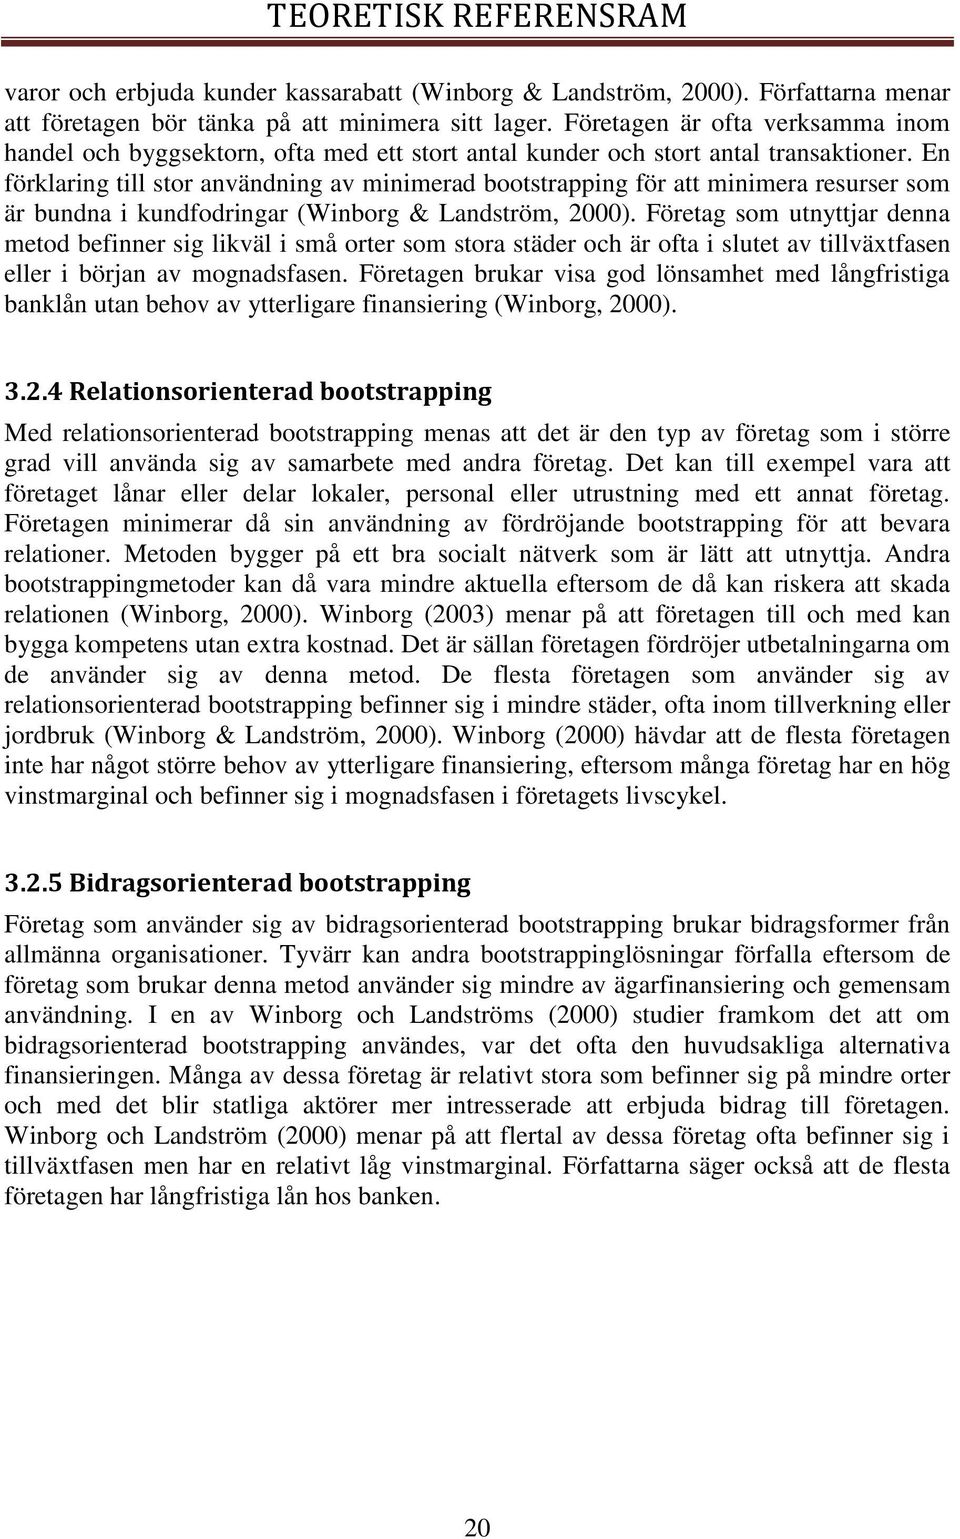 En förklaring till stor användning av minimerad bootstrapping för att minimera resurser som är bundna i kundfodringar (Winborg & Landström, 2000).